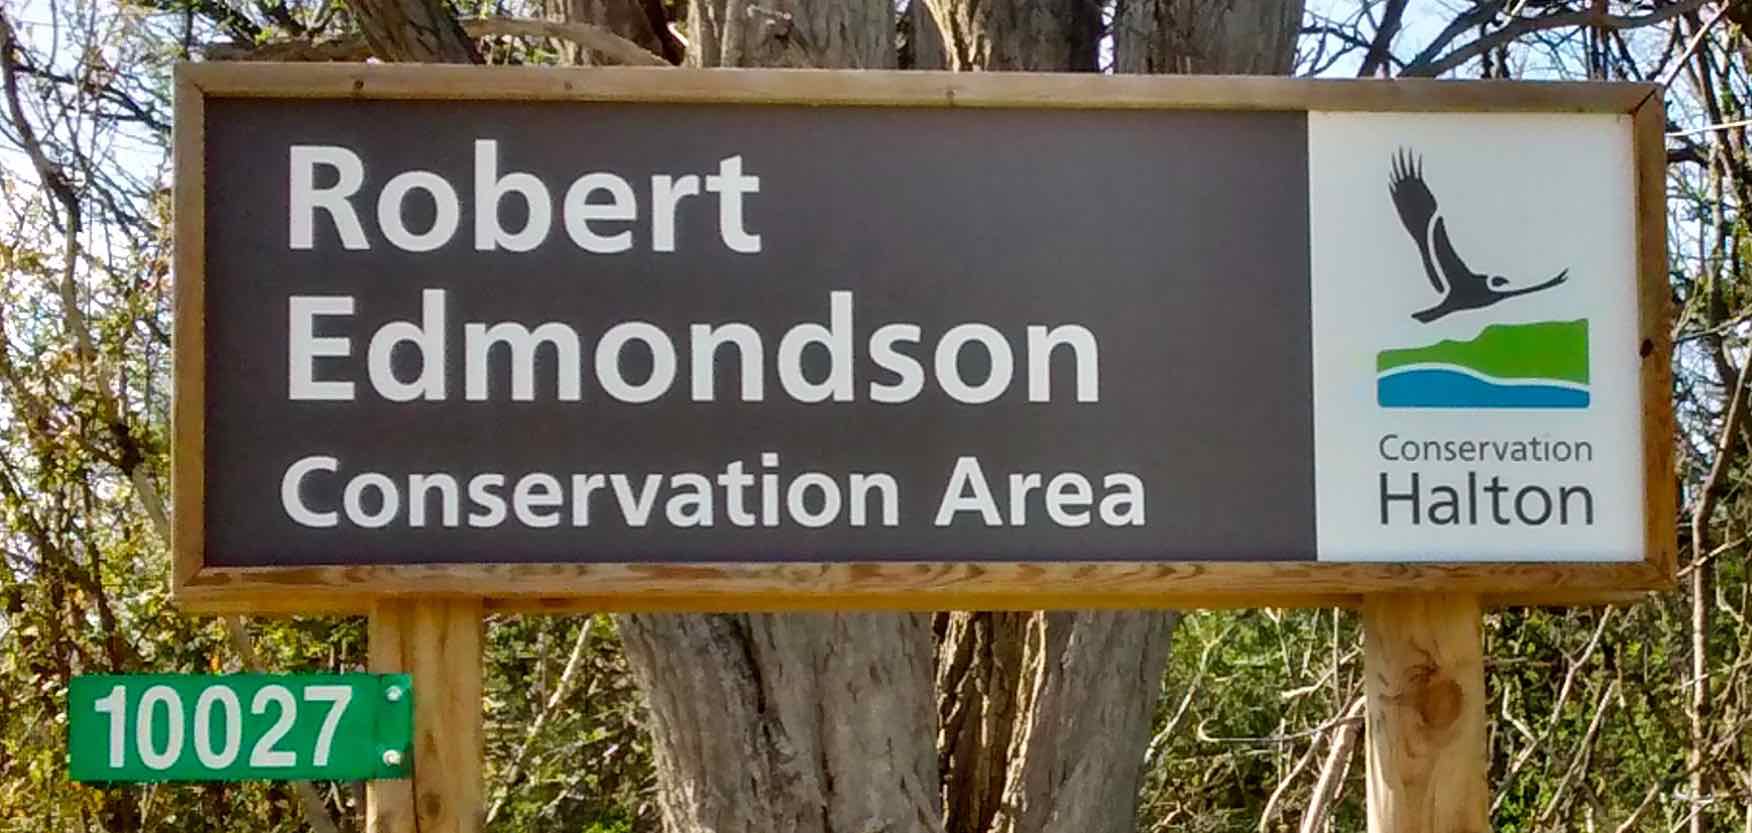 Robert Edmondson Conservation Area Sign AA